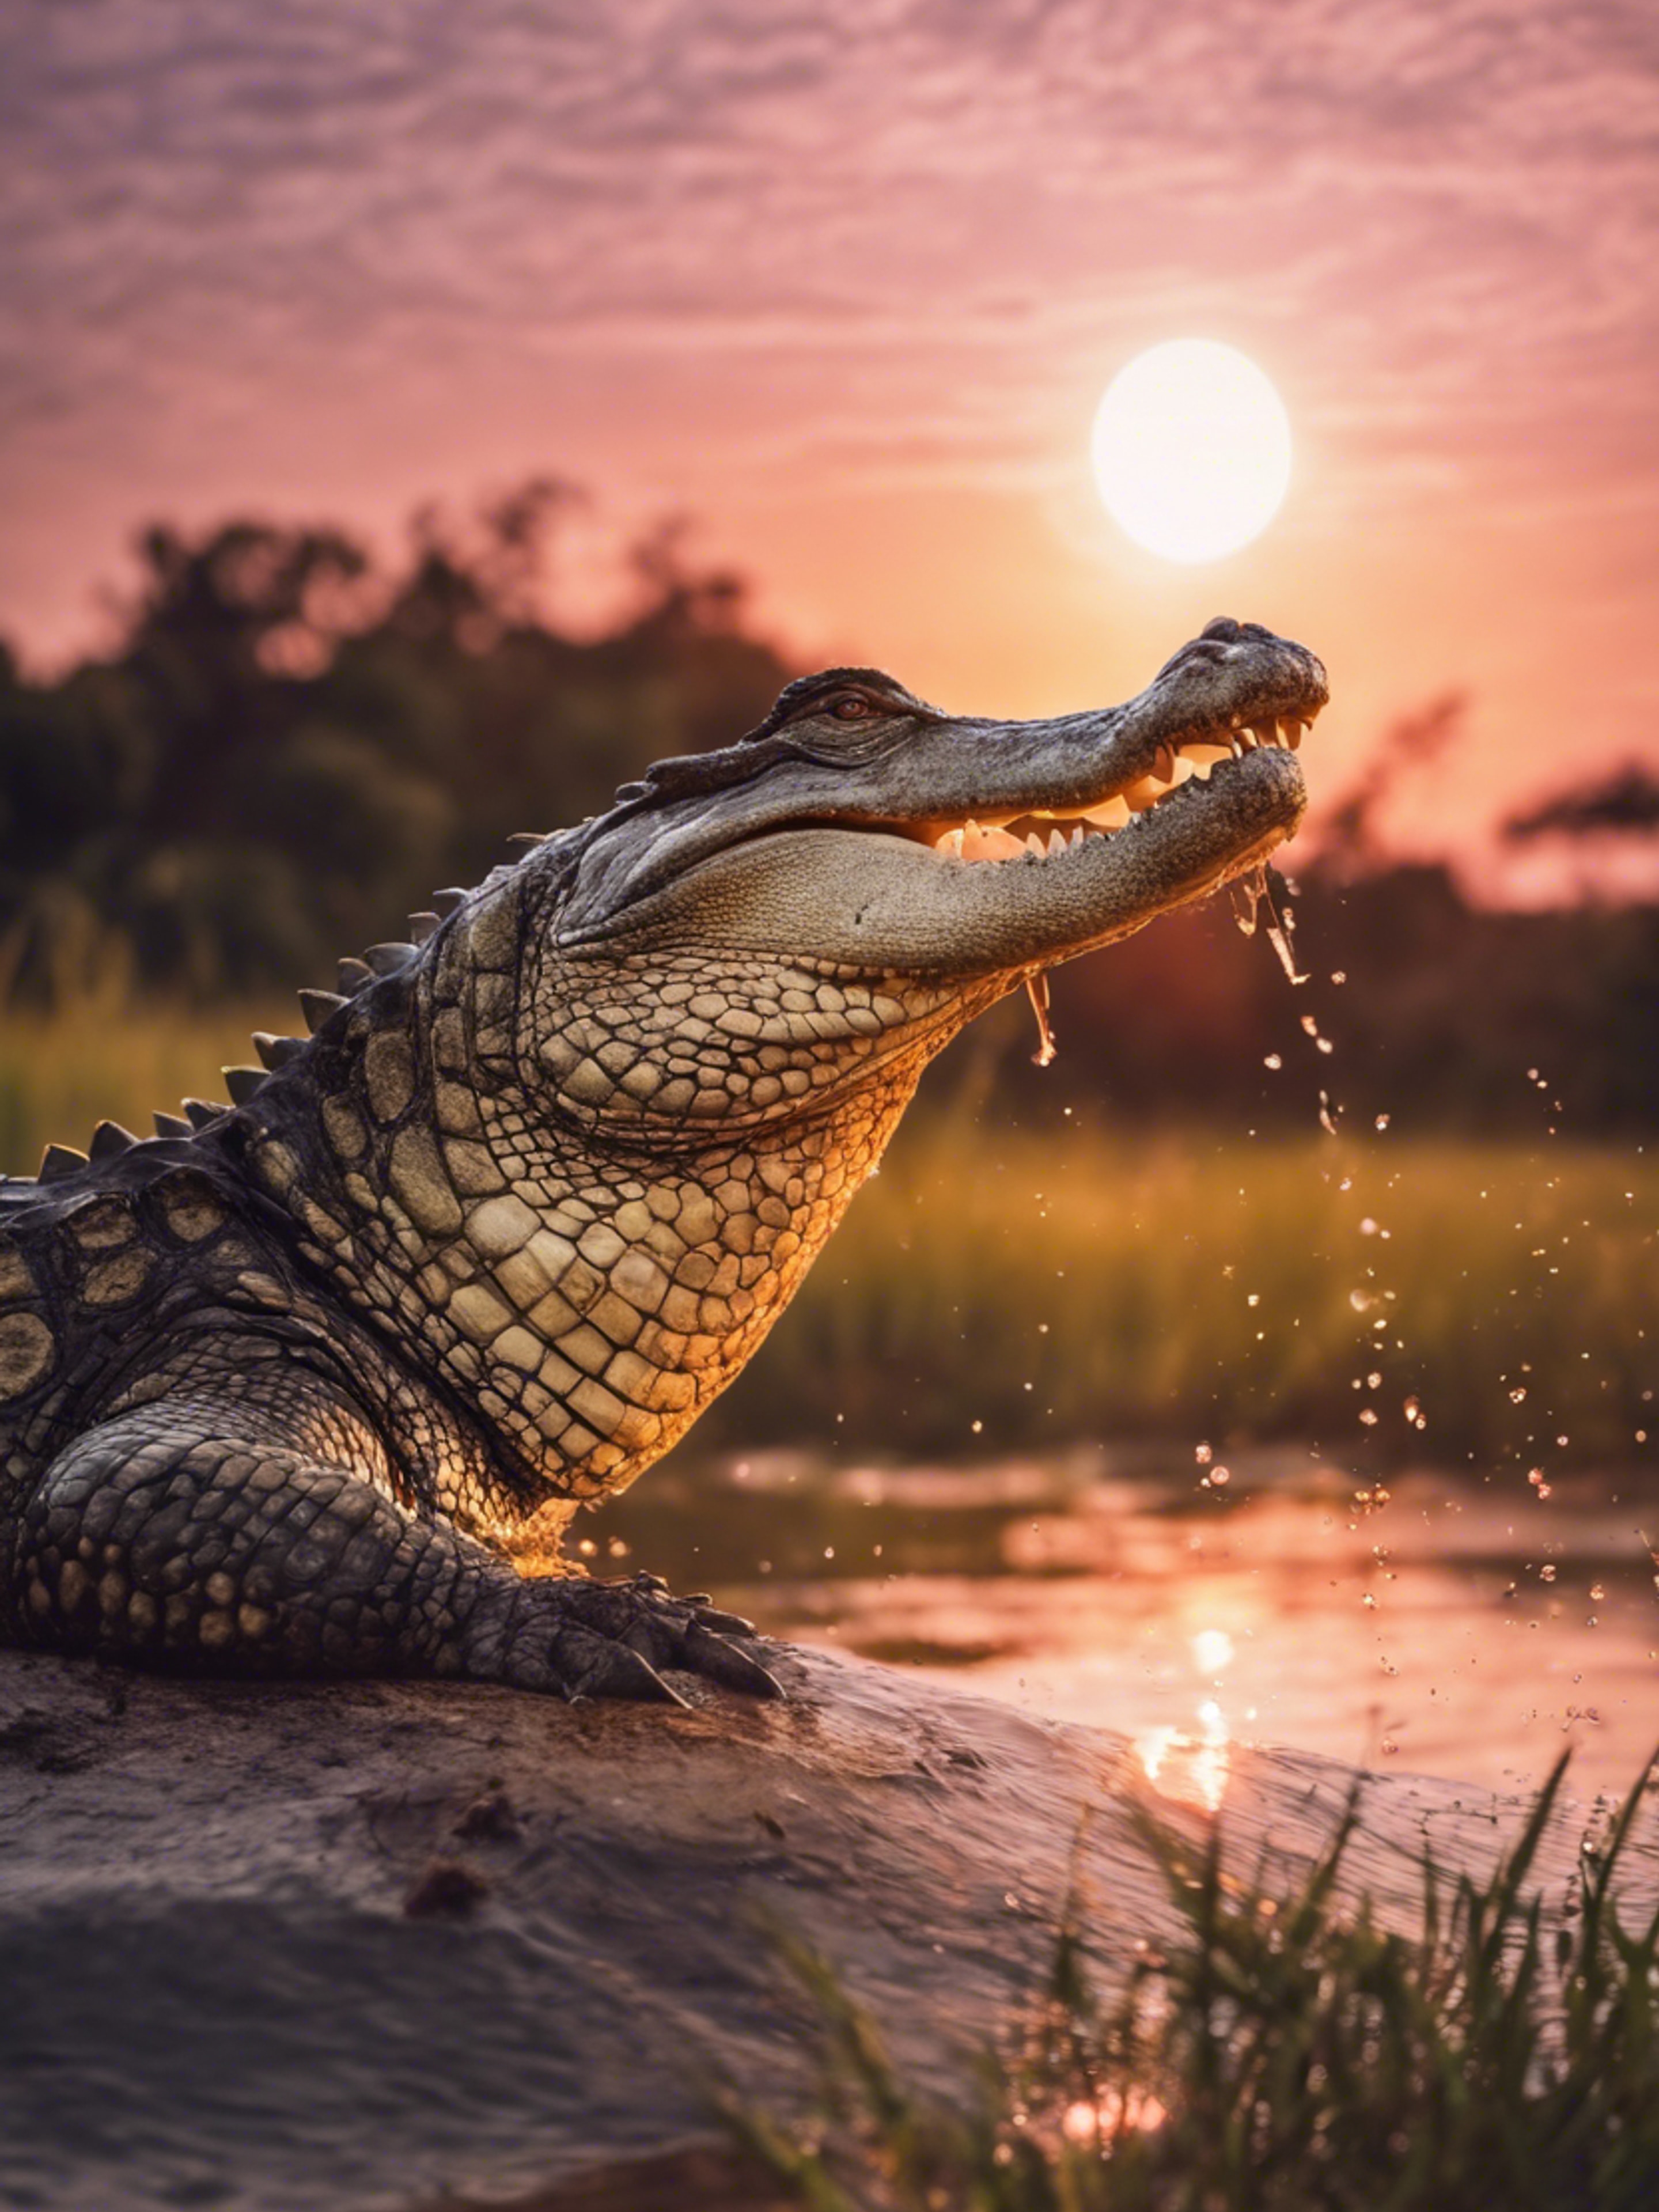 A beautiful sunrise with a crocodile breaking the surface under a rosy sky. duvar kağıdı[8e947b6adb0246b9980f]